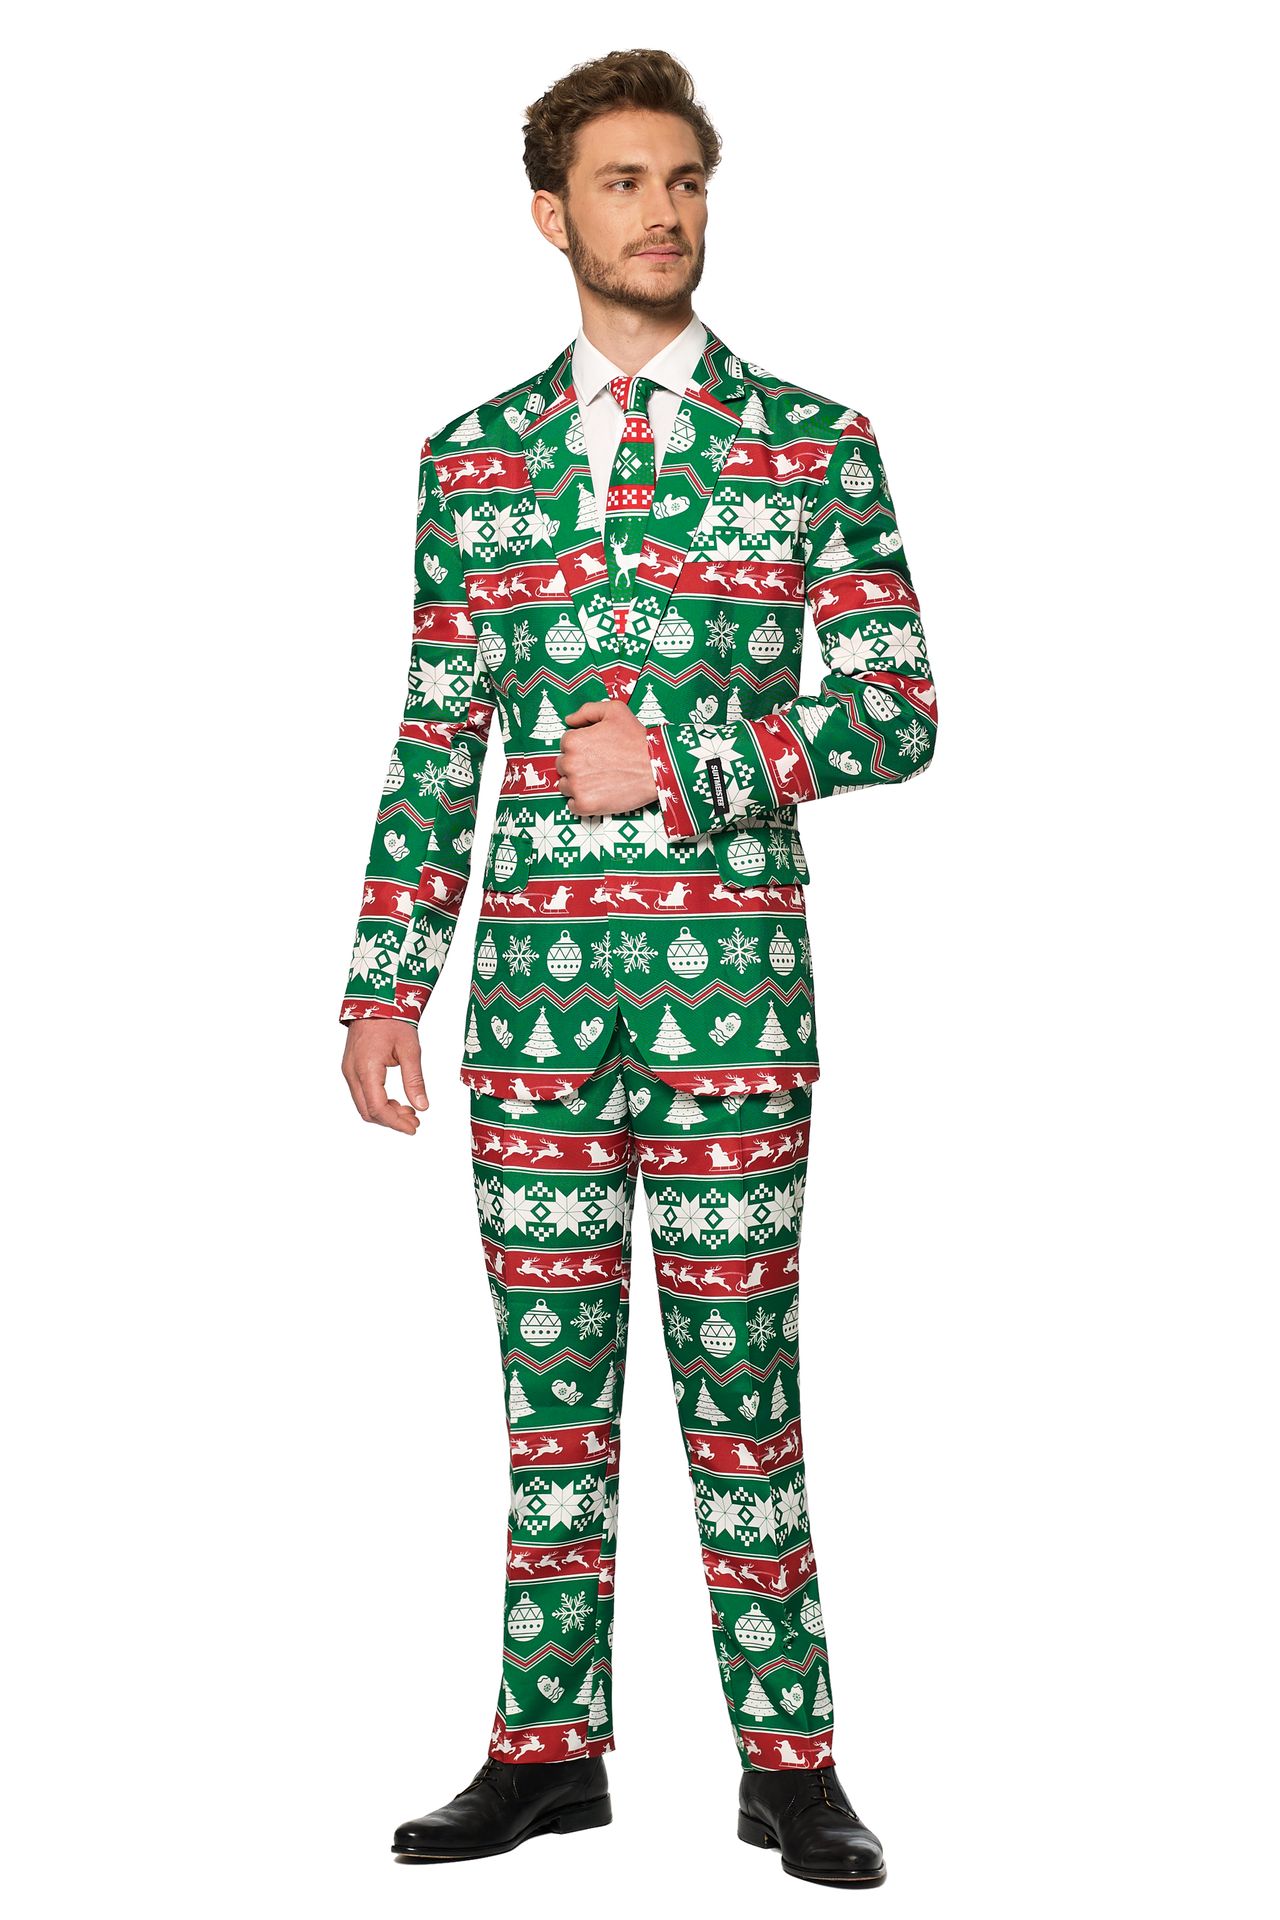 Groene kerstmis Suitmeister kostuum